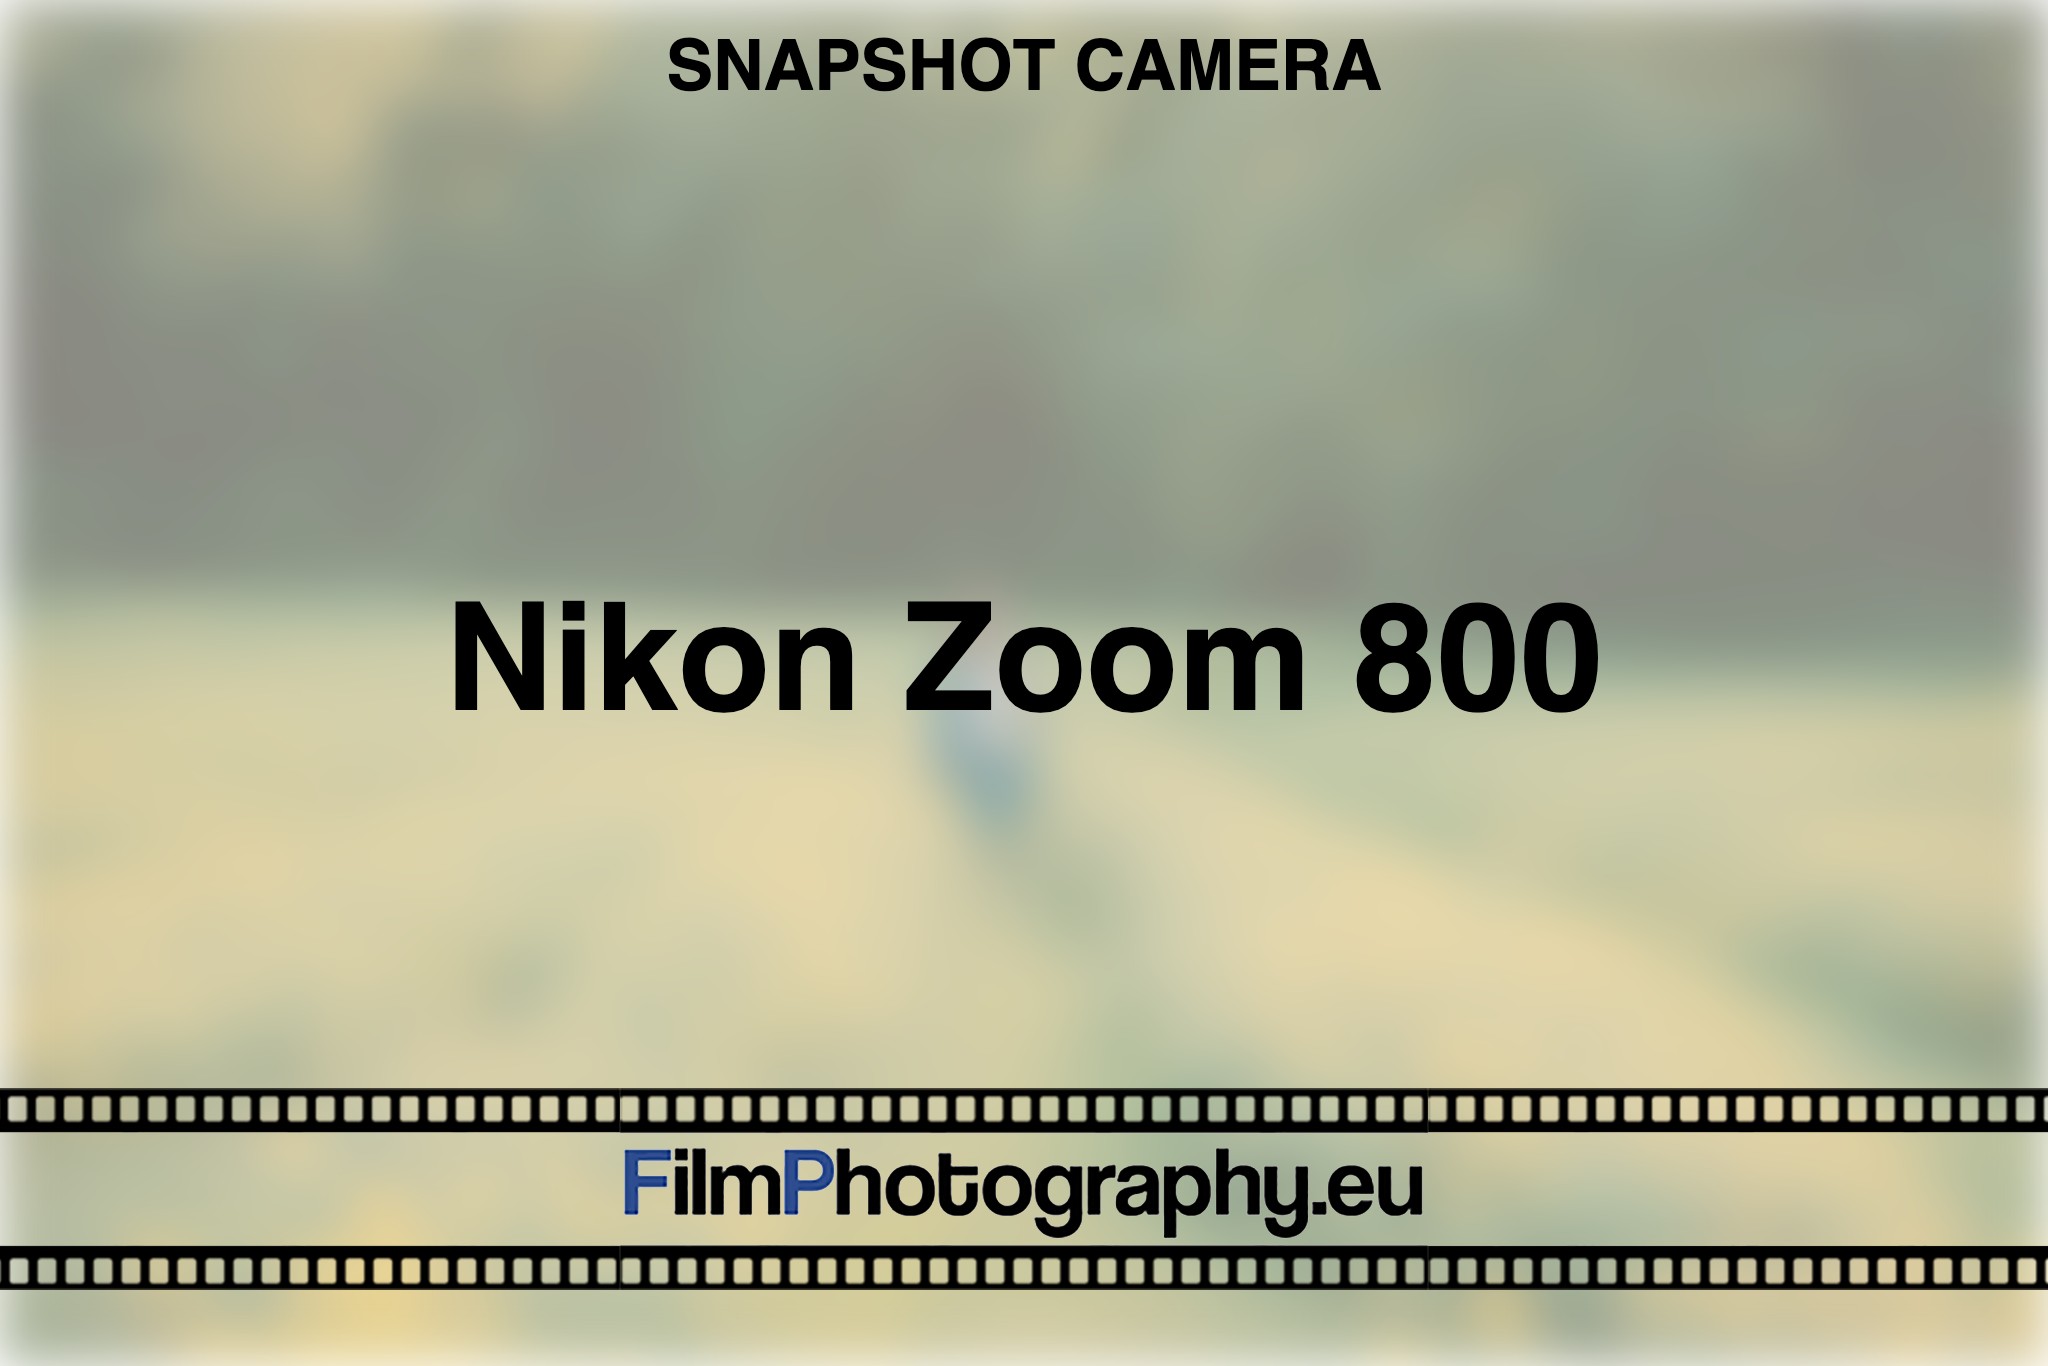 nikon-zoom-800-snapshot-camera-bnv